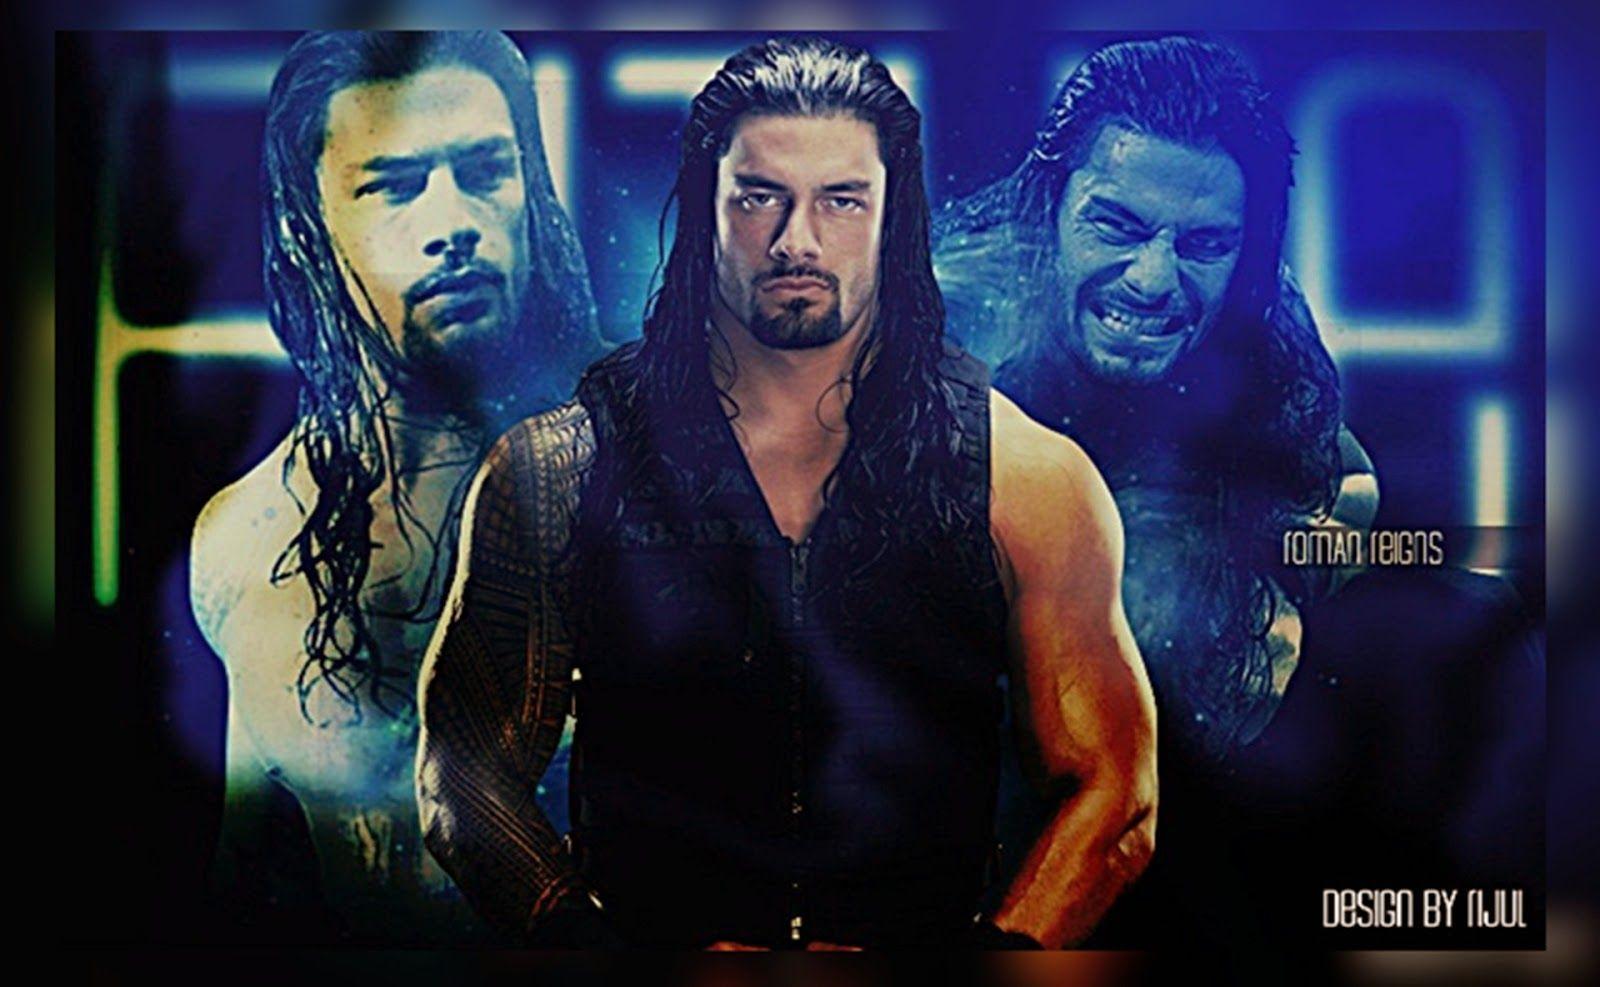 Roman Reigns HD Wallpaper. WWE HD Wallpaper, WWE Image, WWE